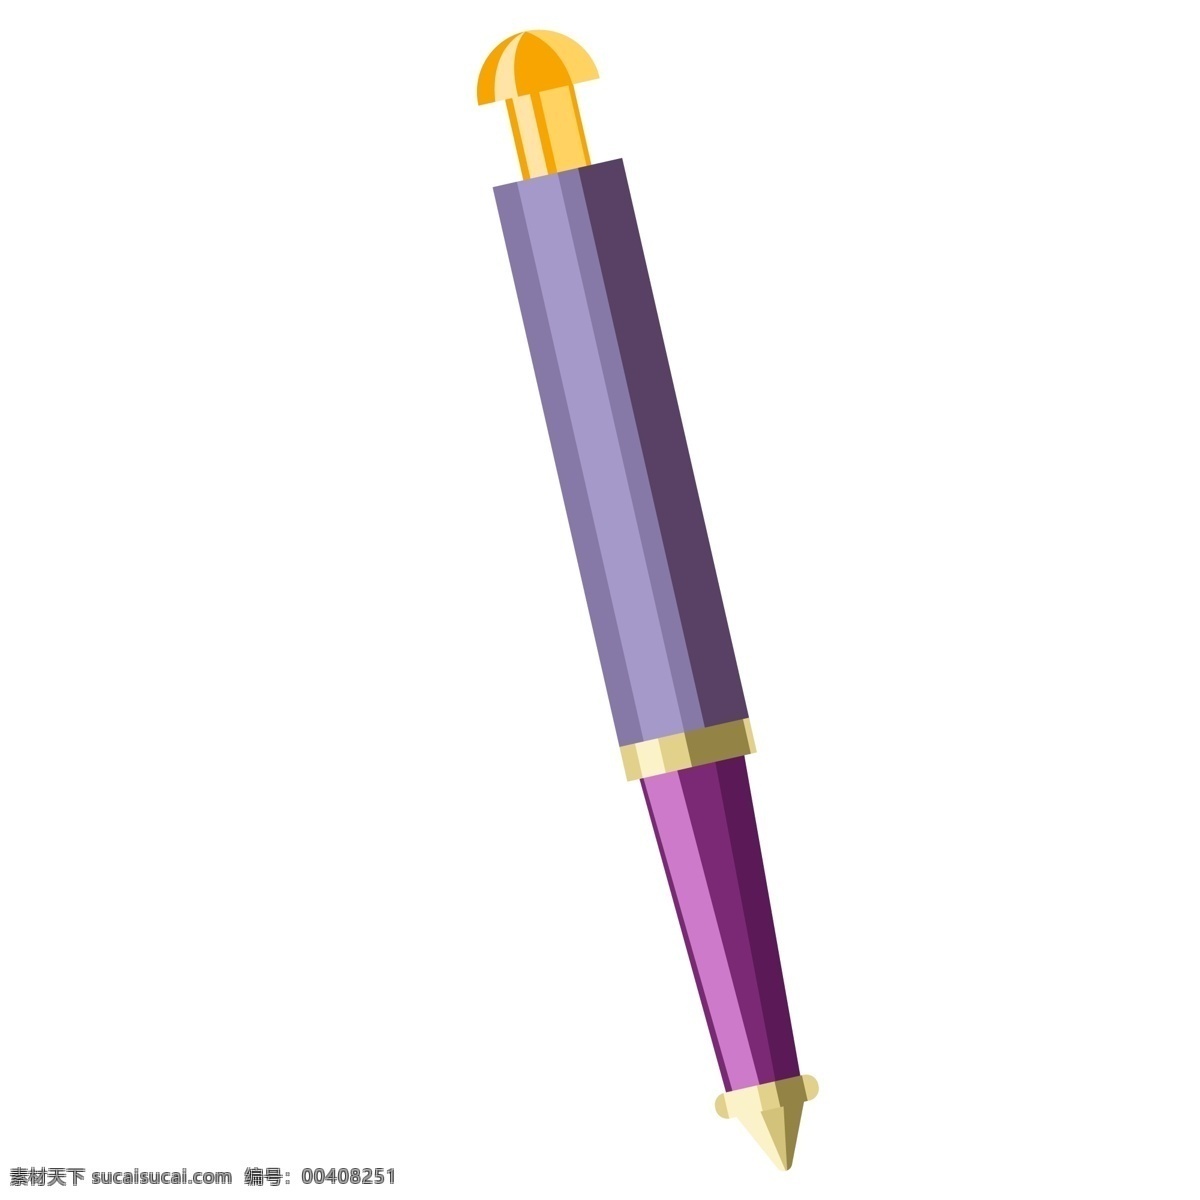 一个卡通笔头 笔头 工具 卡通工具 精致的笔头